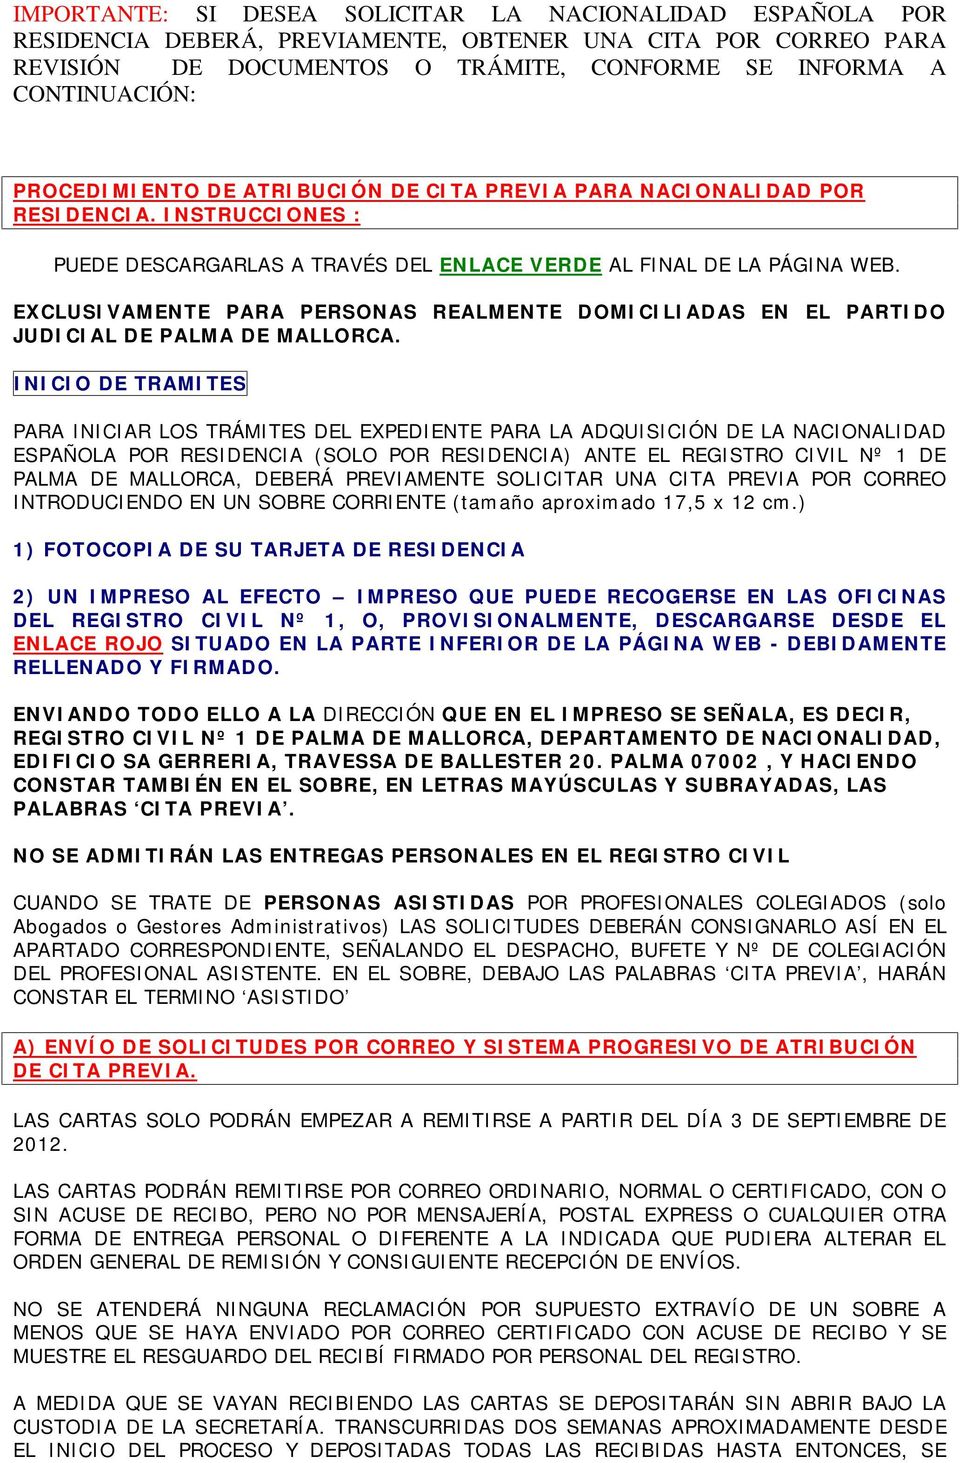 EXCLUSIVAMENTE PARA PERSONAS REALMENTE DOMICILIADAS EN EL PARTIDO JUDICIAL DE PALMA DE MALLORCA.